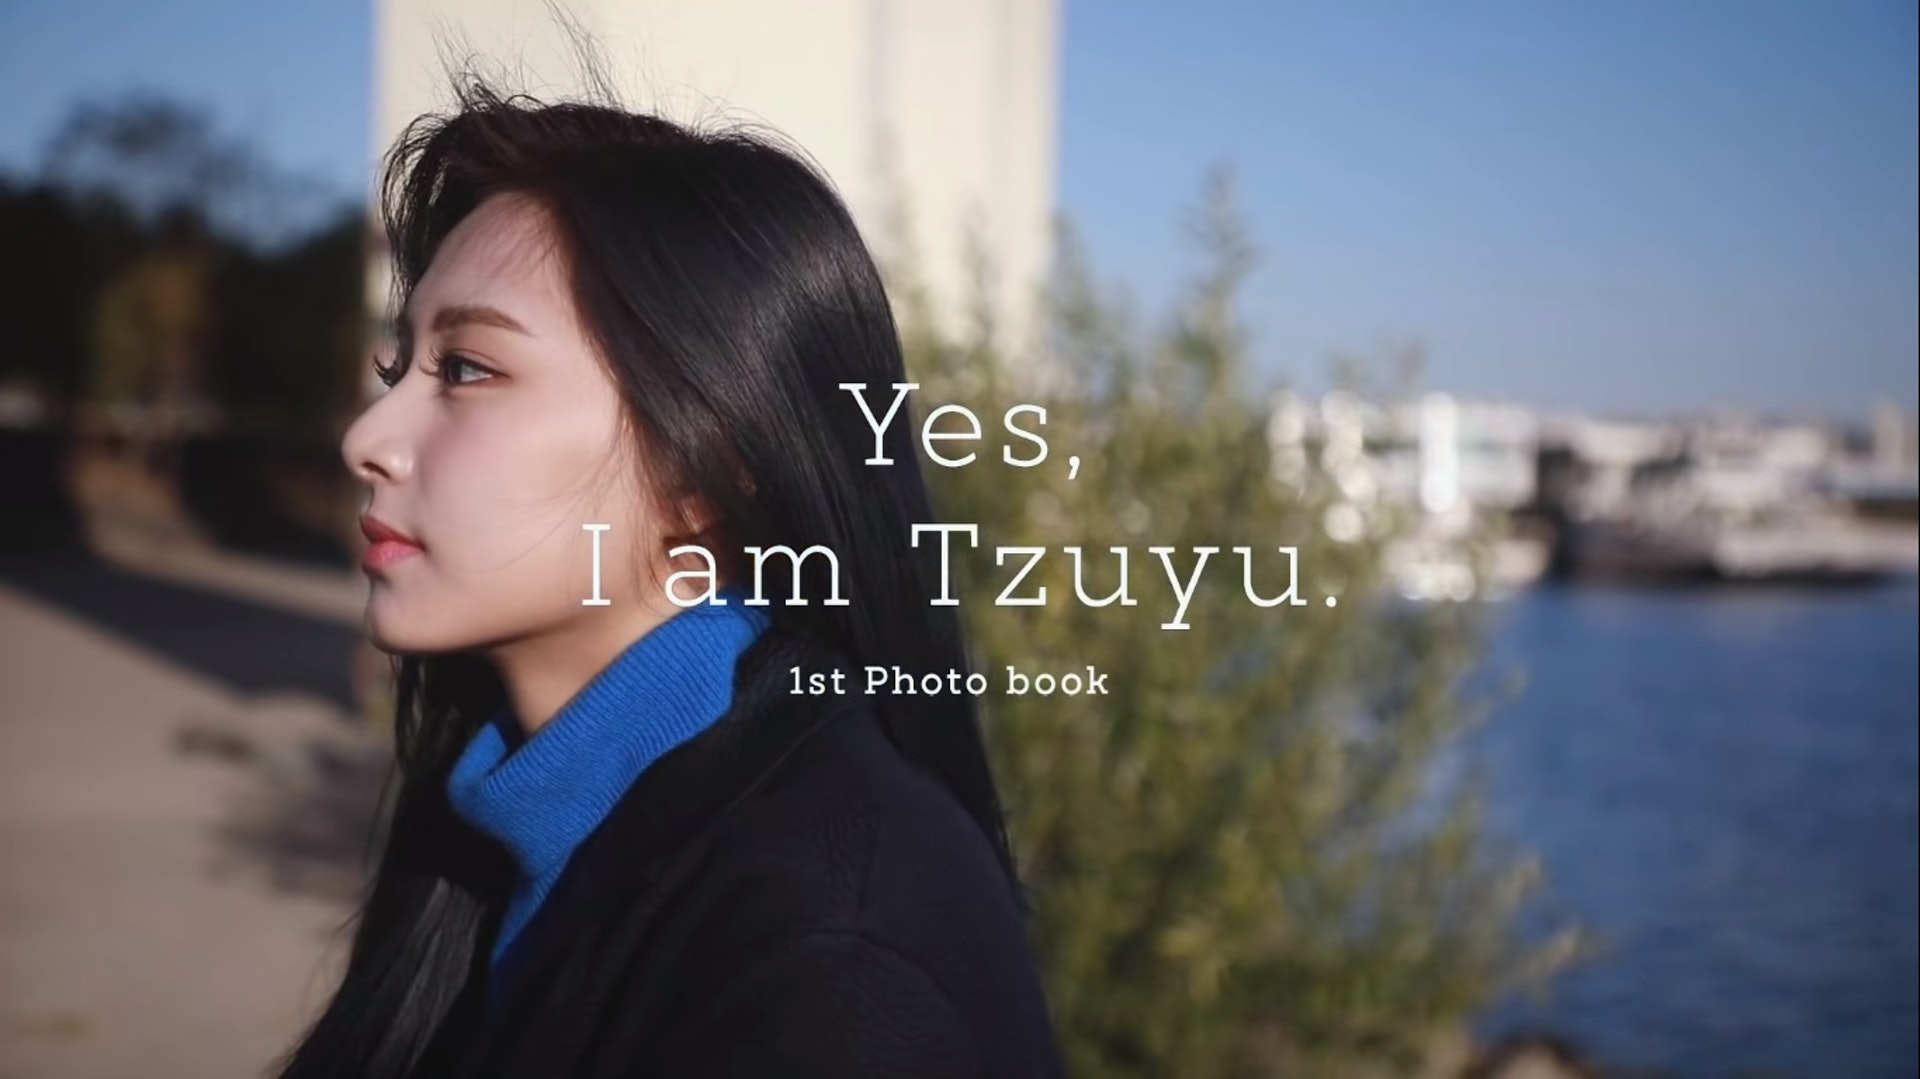 周子瑜單人寫真《Yes, I am Tzuyu.》釋出36秒預告(TWICE Youtube "Yes, I am Tzuyu"影片截圖)